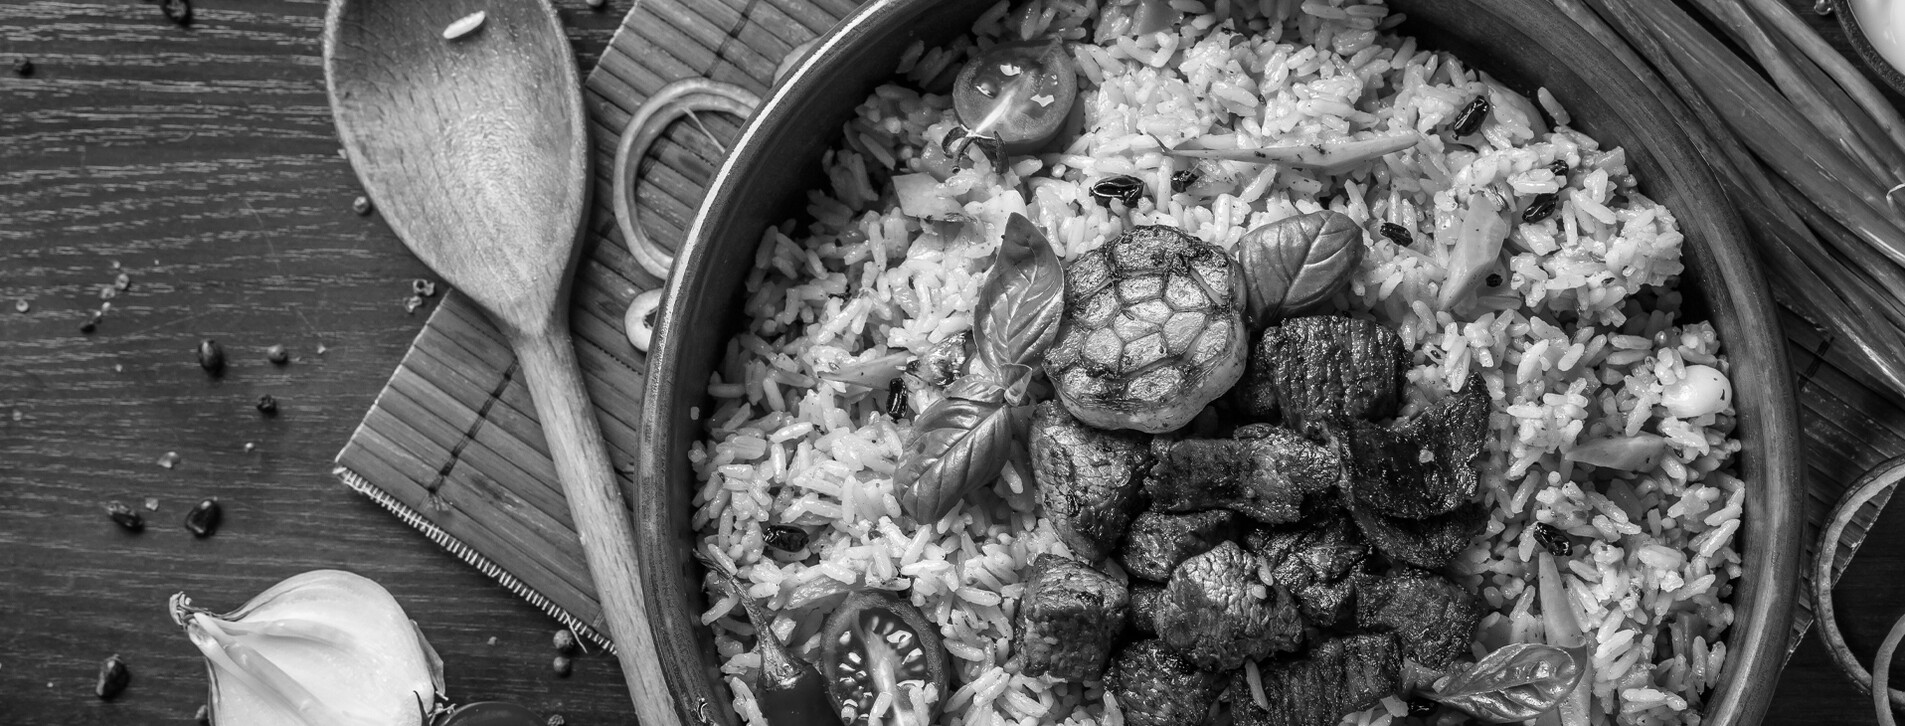 Фото 1 - Ужин в ресторане узбекской кухни Eshak